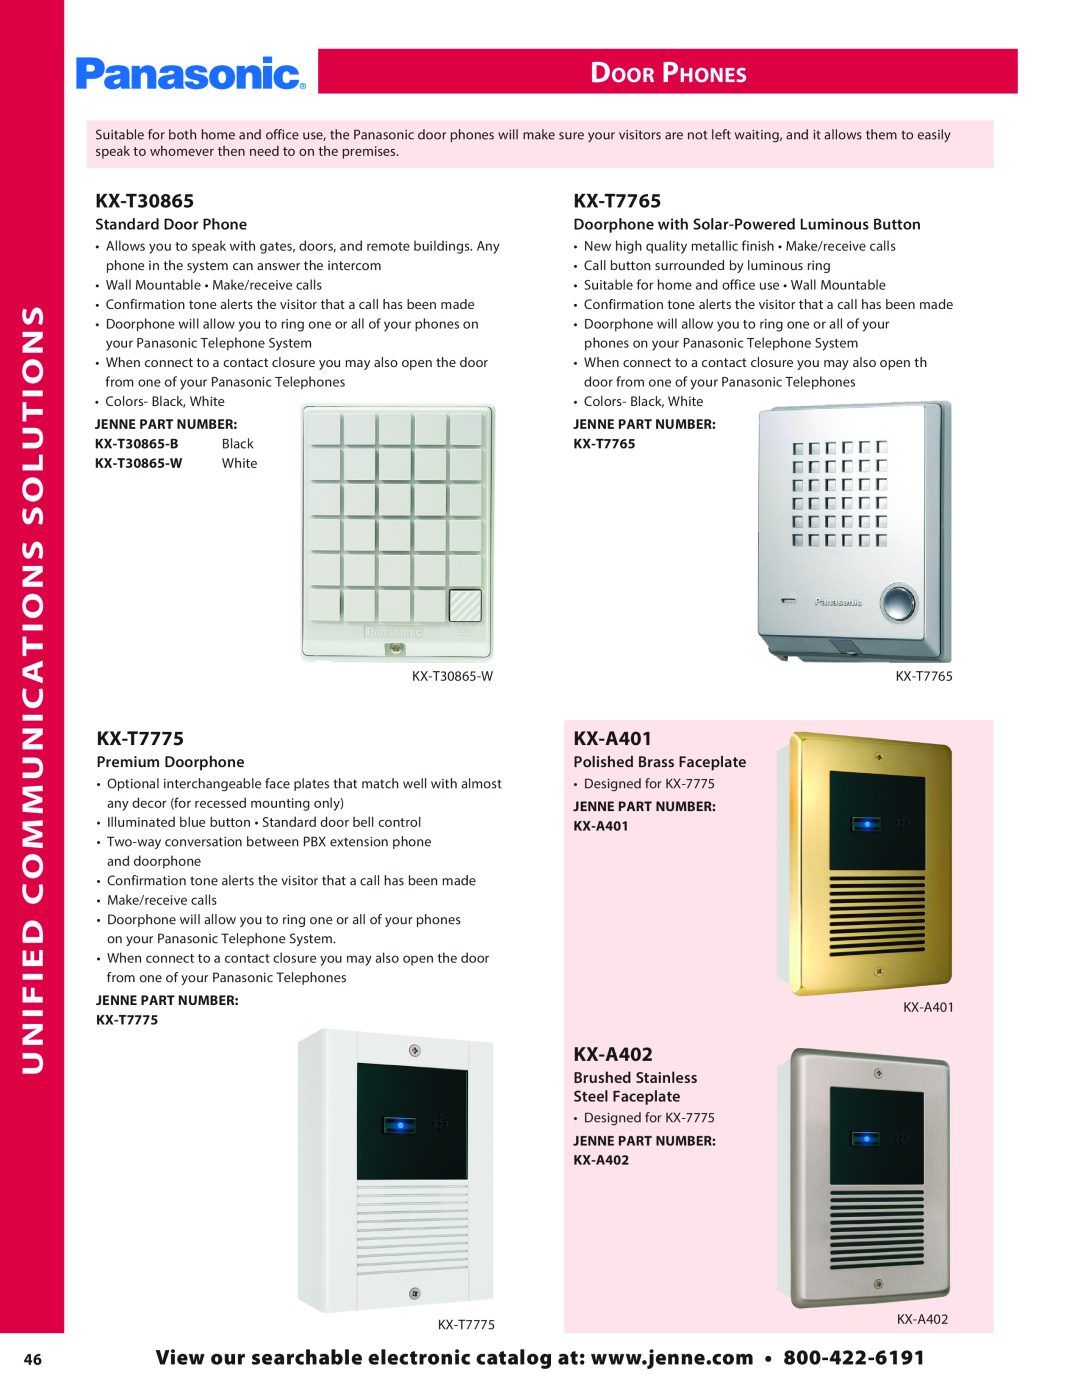 Panasonic PMPU2000 manual Unified Communications, Door Phones, Solutions, Standard Door Phone, Premium Doorphone 